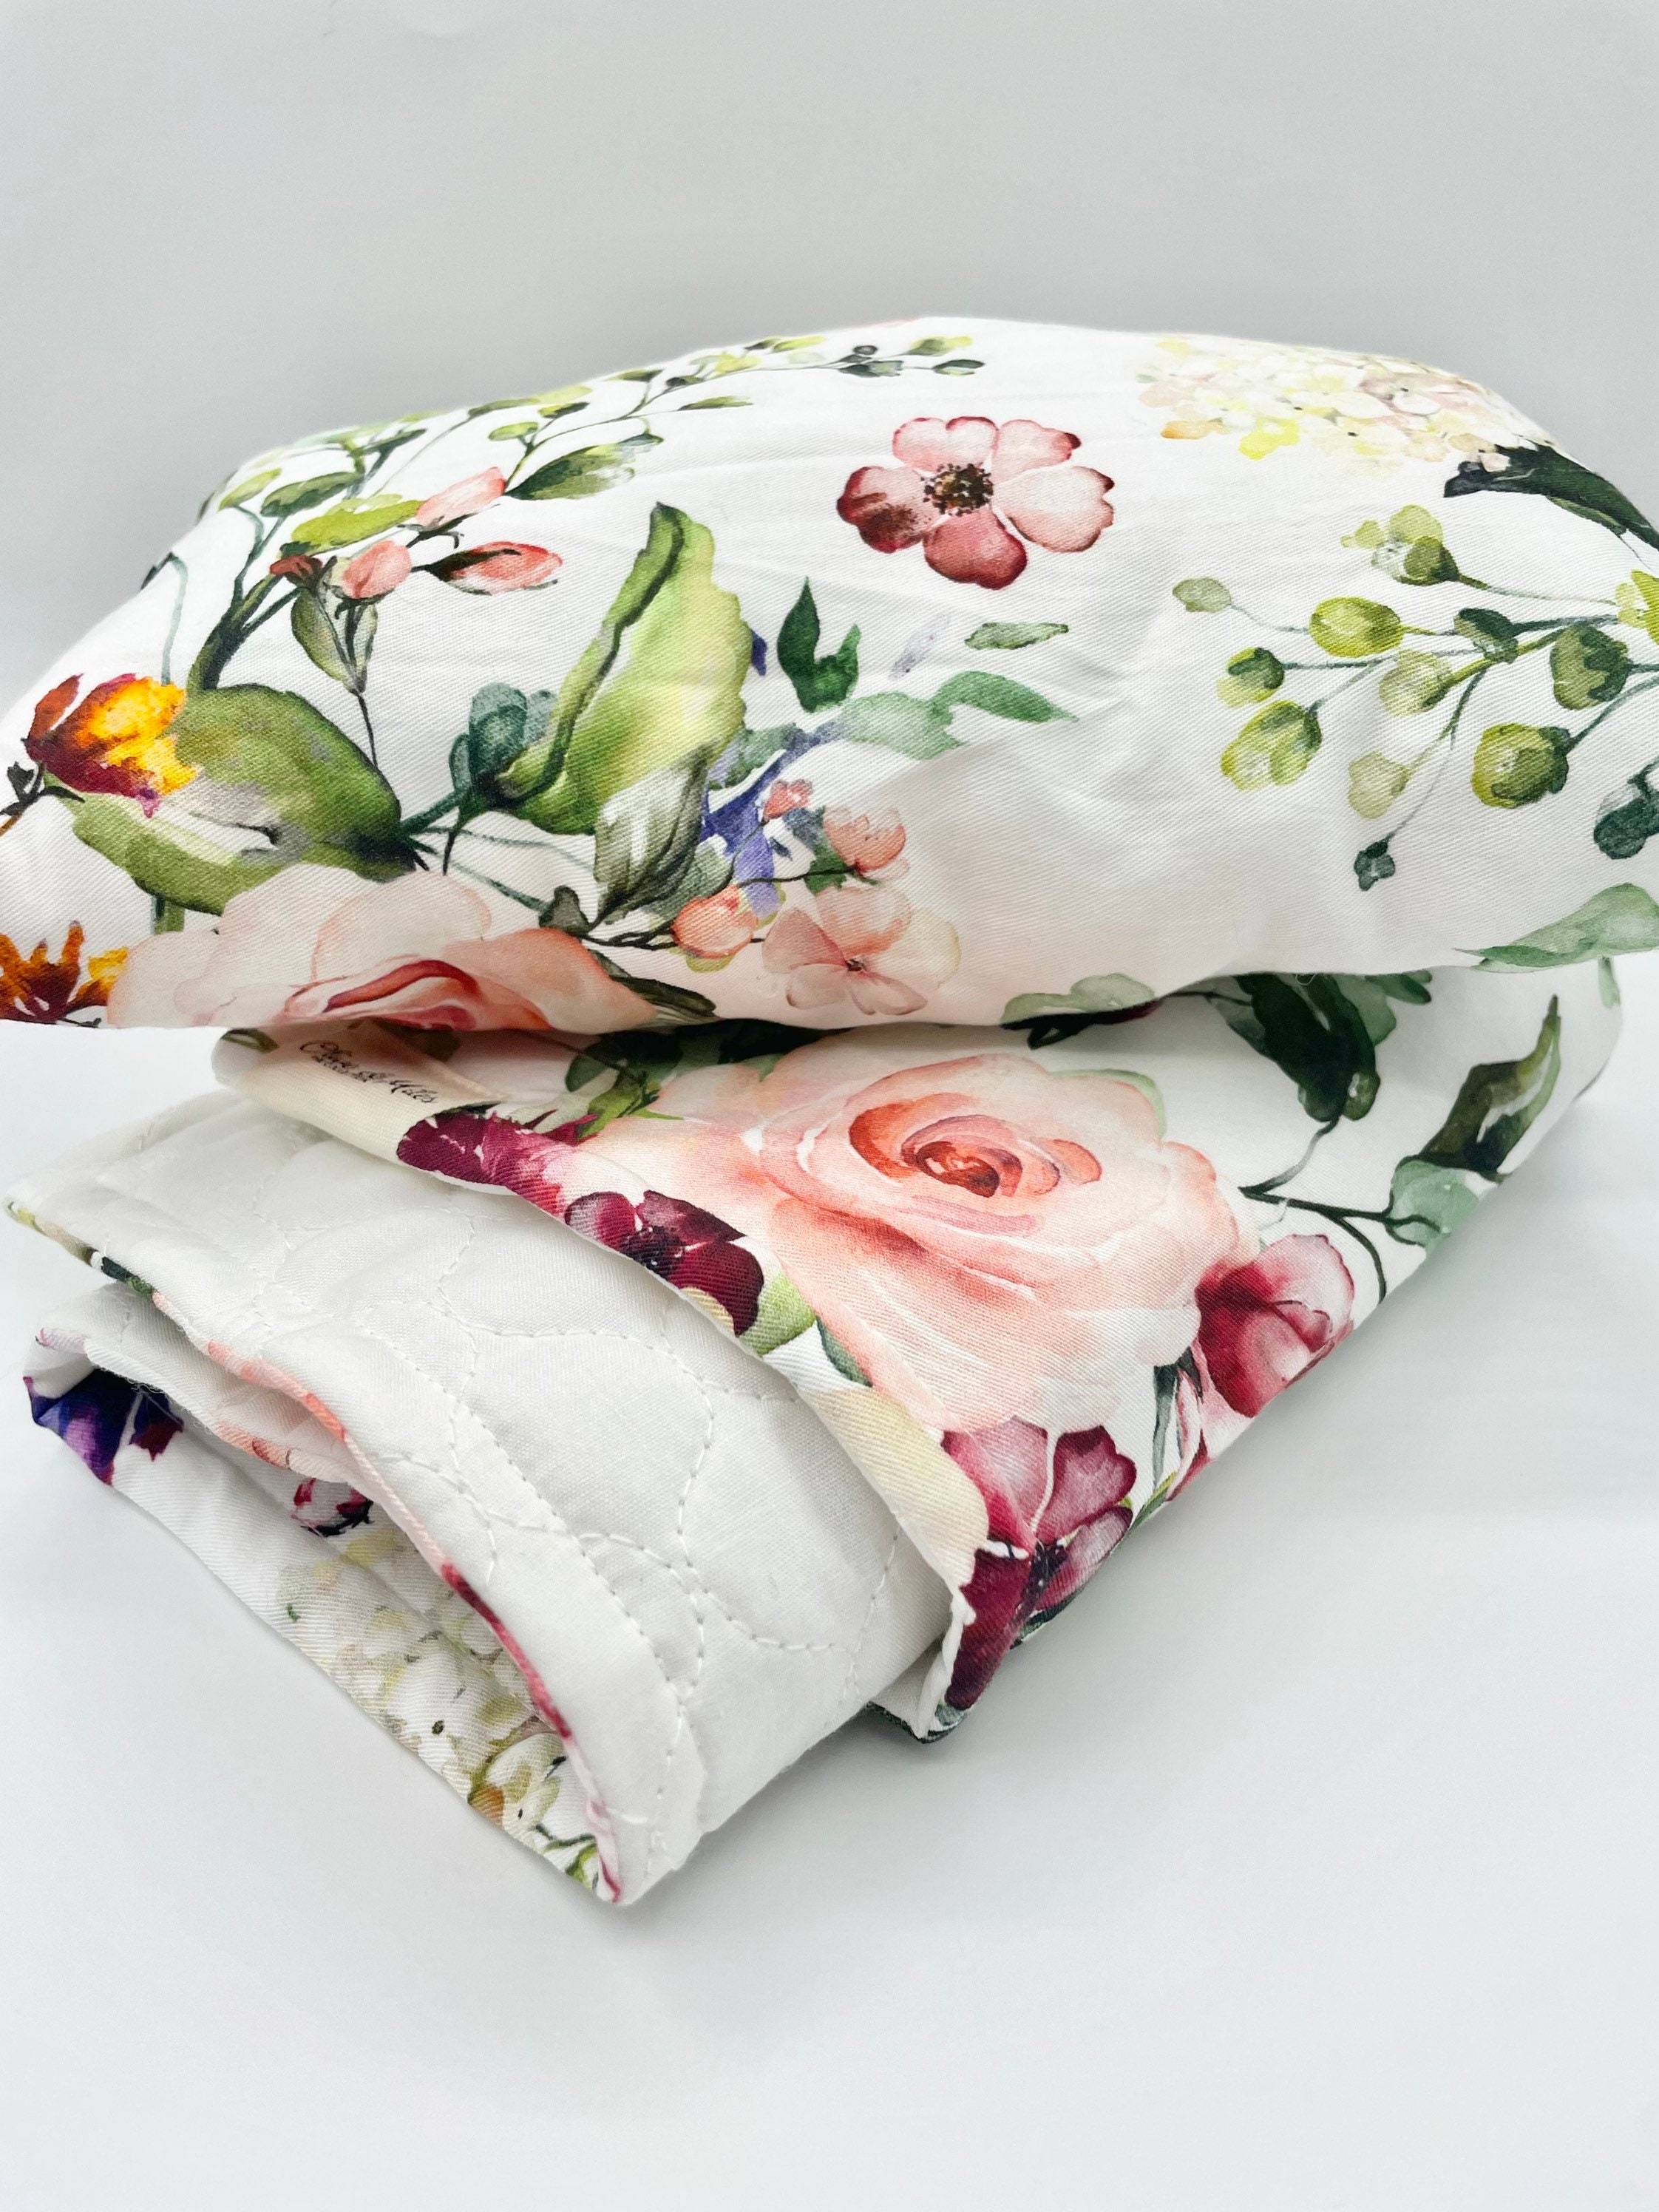 Dolls Bedding Floral Bed Cot Quilt Kmart Planter Hack - Etsy Australia